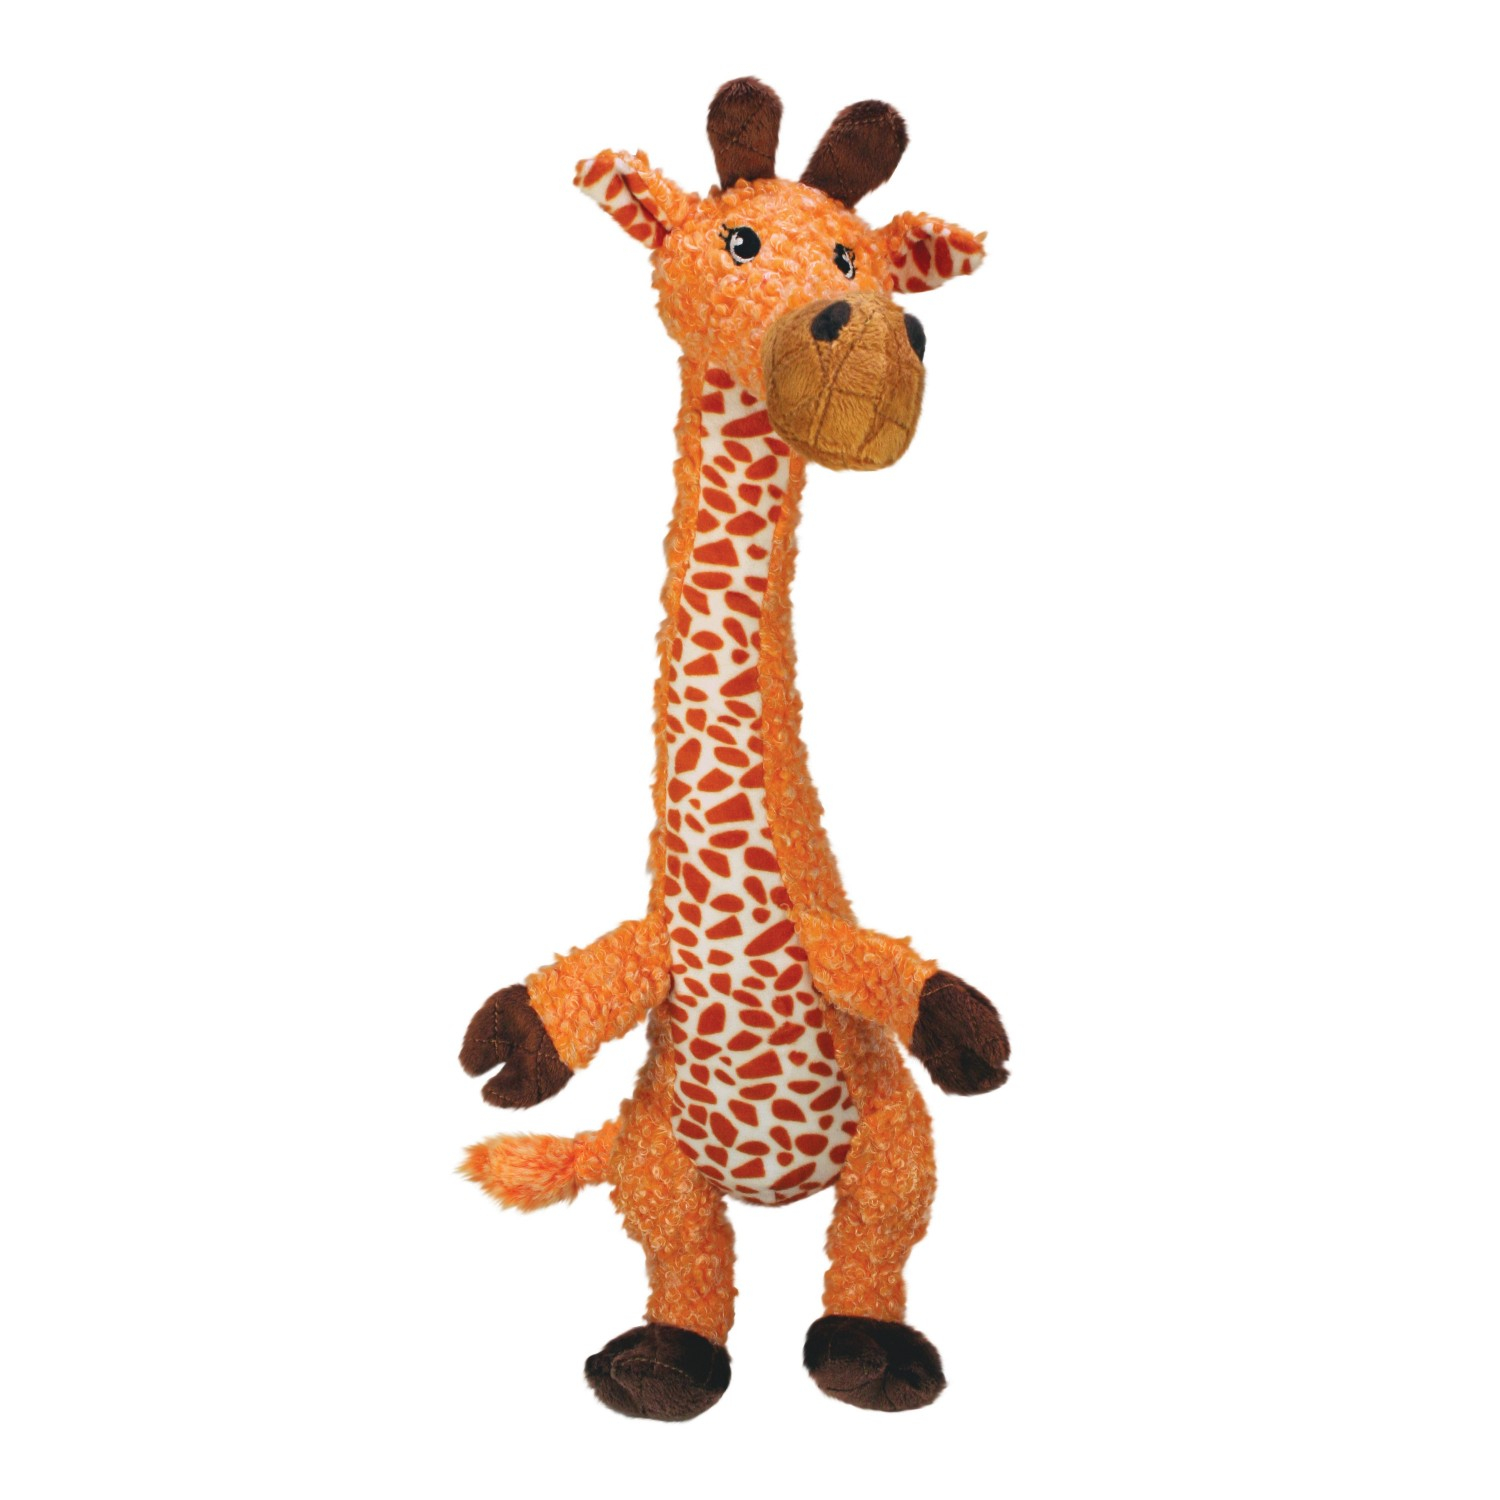 Jouet pour chien KONG Peluche Shakers Luvs Girafe